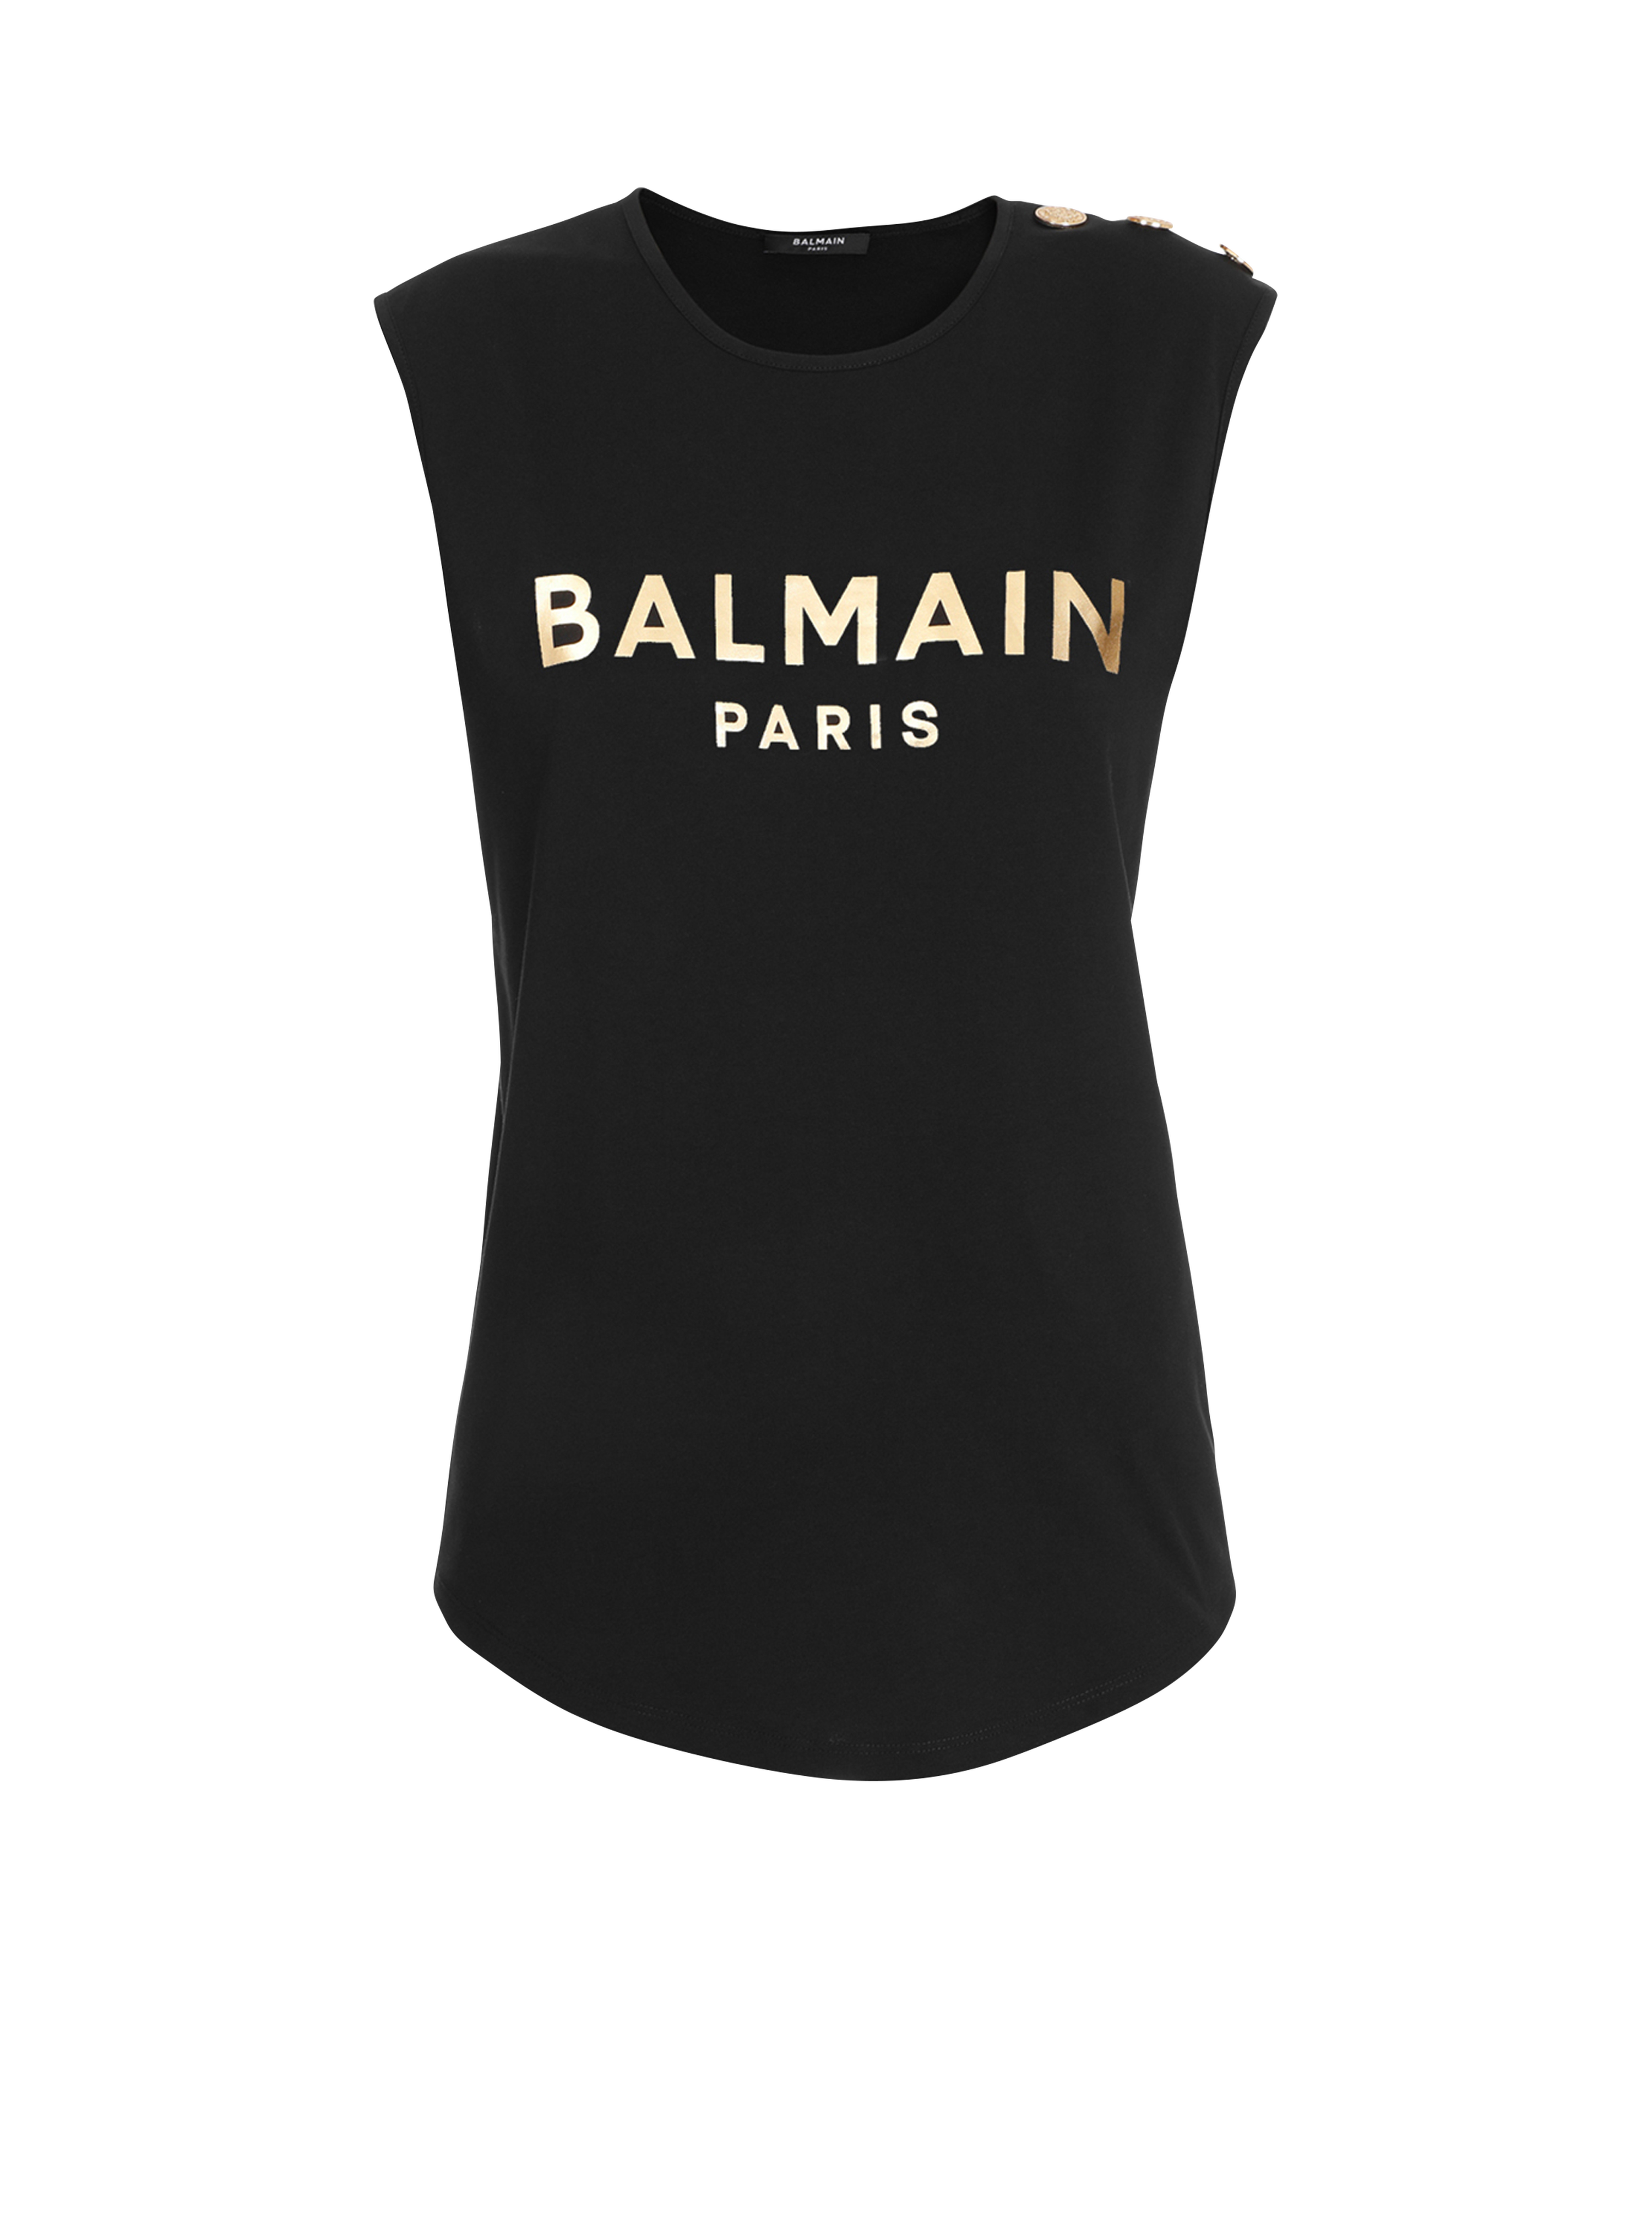 Cotton T-shirt with Balmain logo print, gold